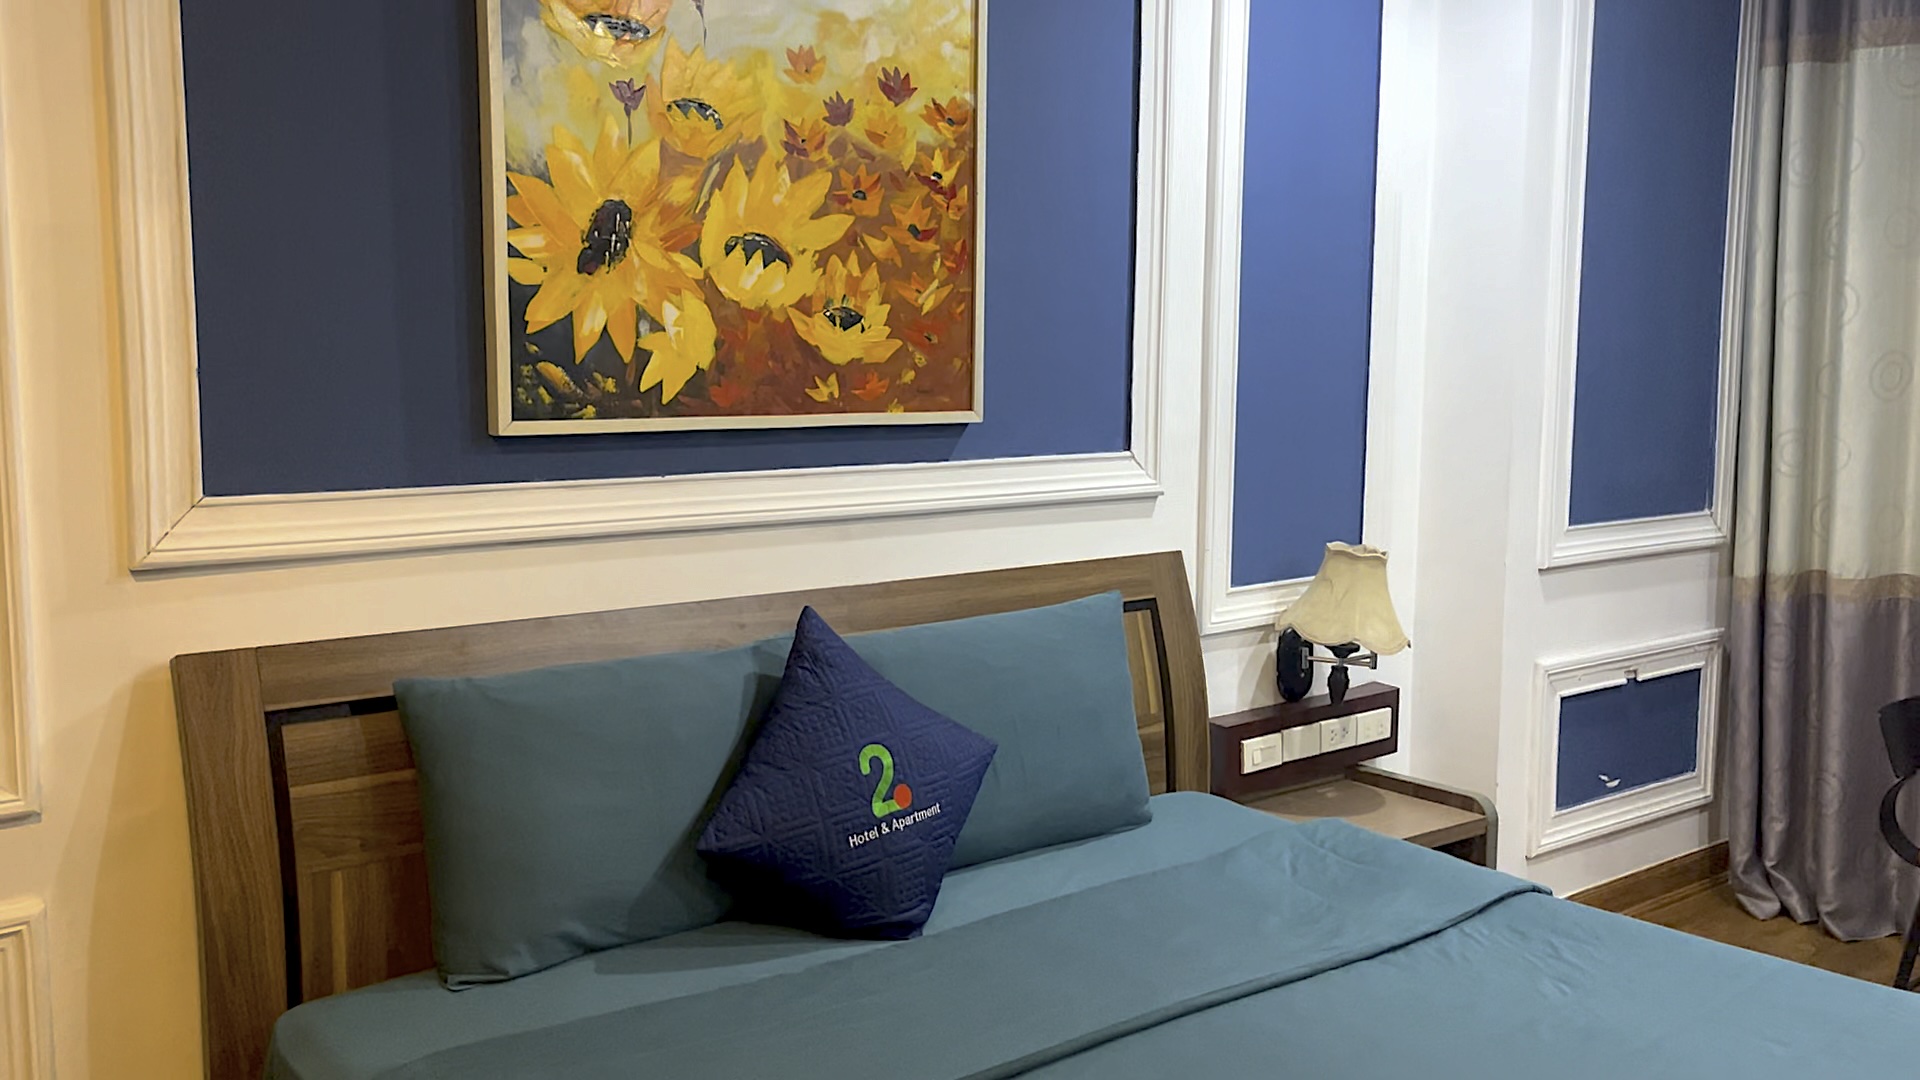 ハノイのホテルの部屋。緑色のシーツで覆われたベッドの上にはクッションが1つ置かれている。頭上にはひまわりの絵が飾られている。